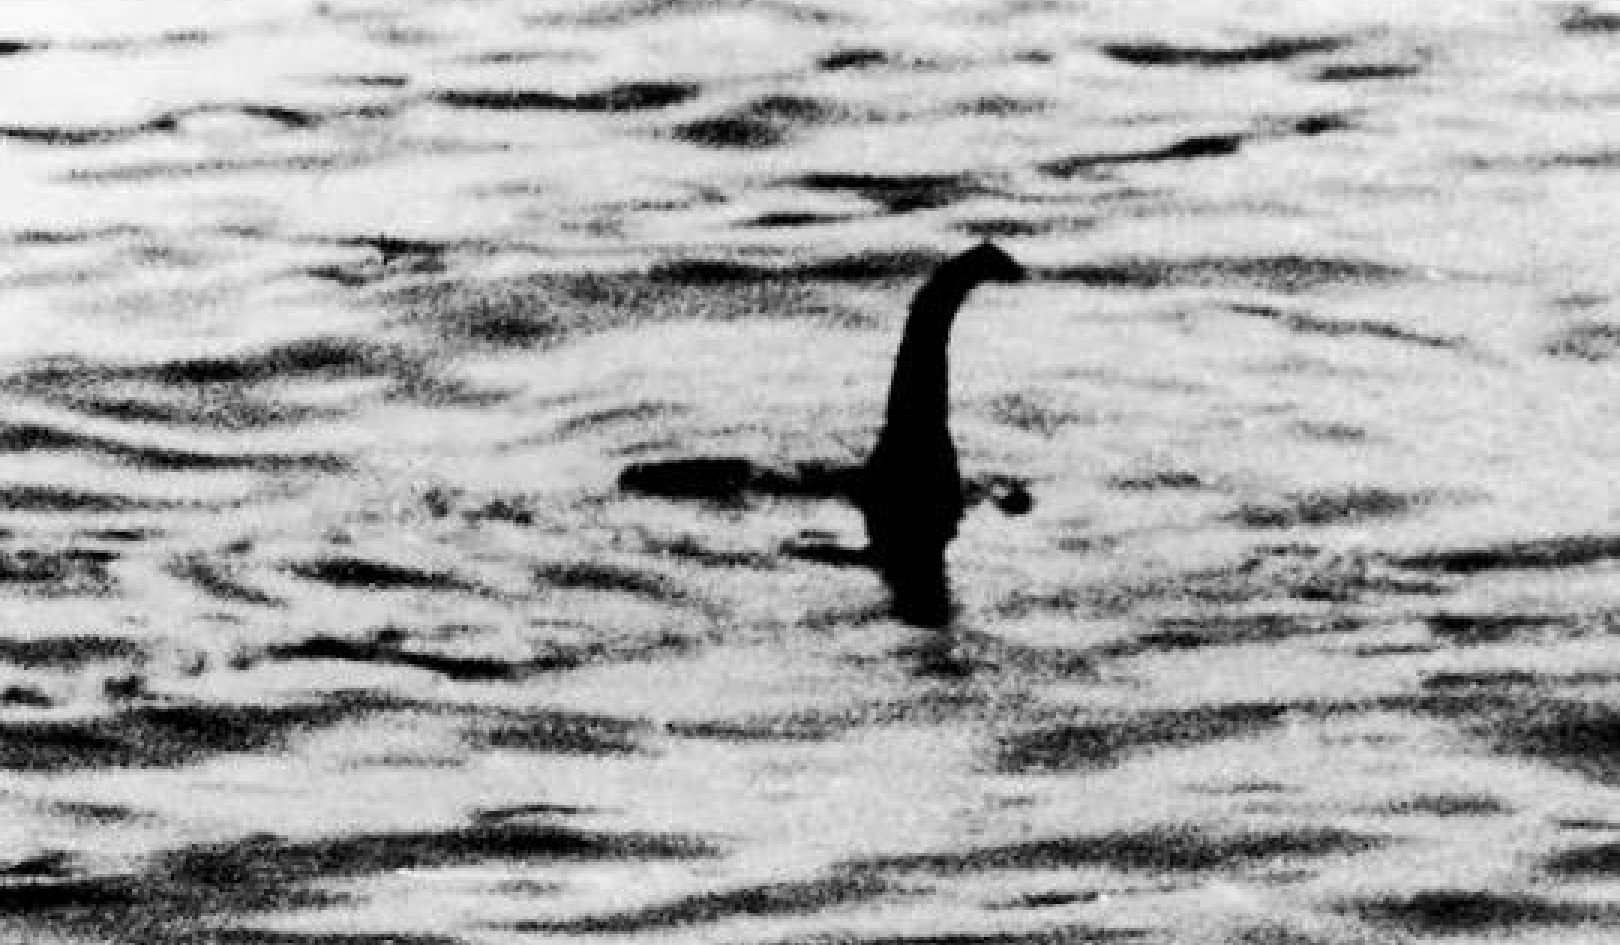 Il mostro di Loch Ness è reale?